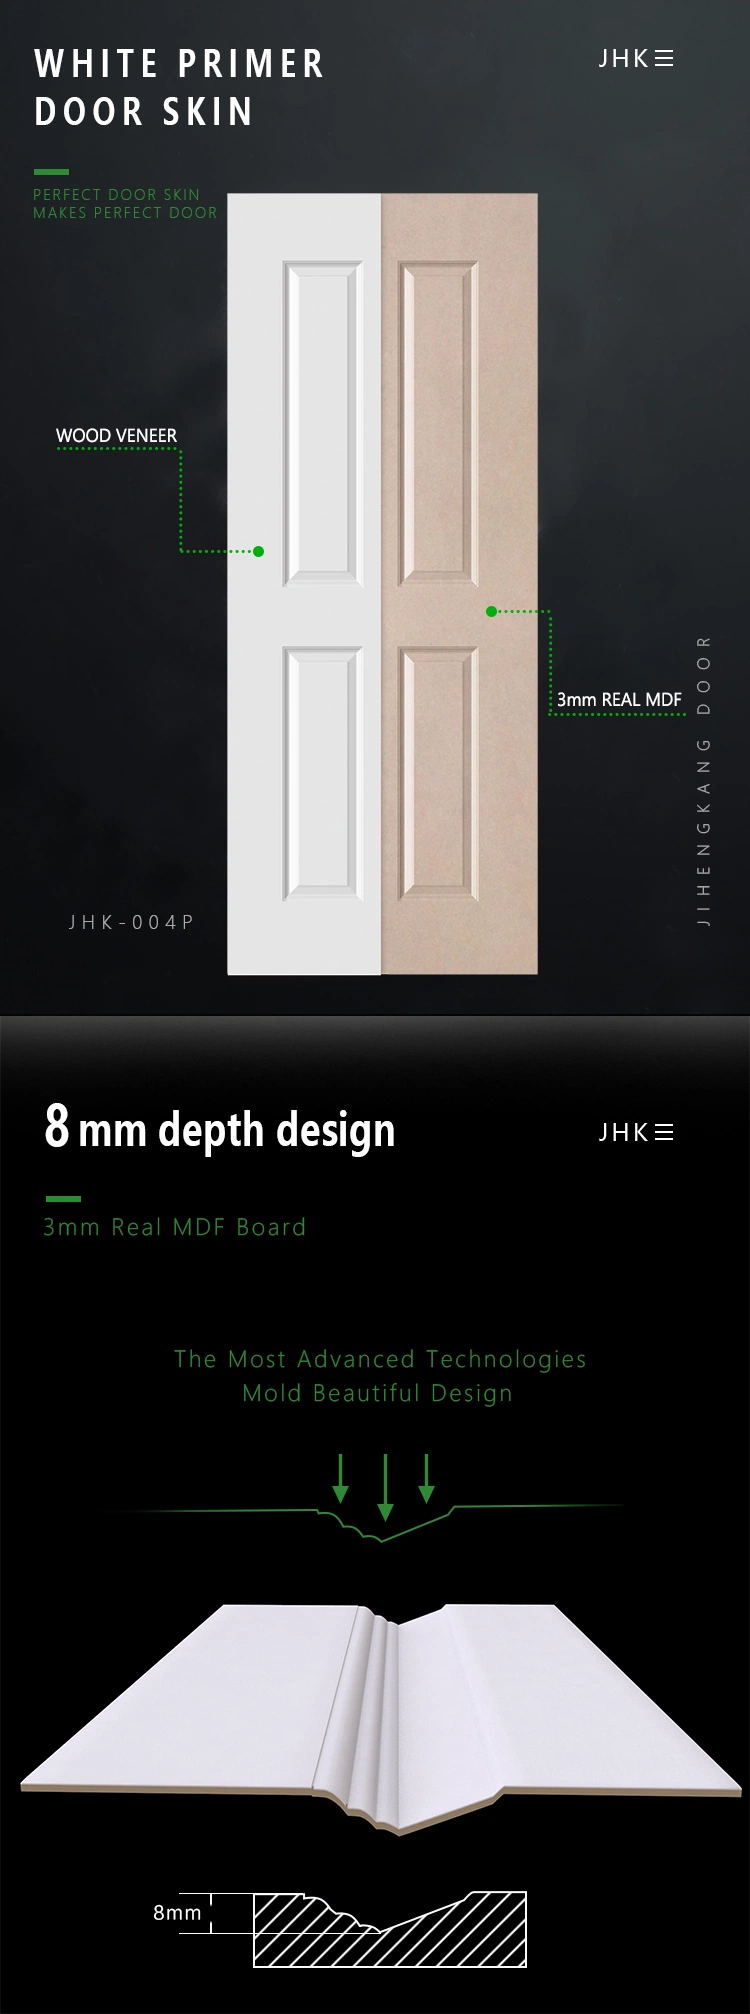 Jhk-M03 Smooth Wooden Exterior White Primer Door Skin